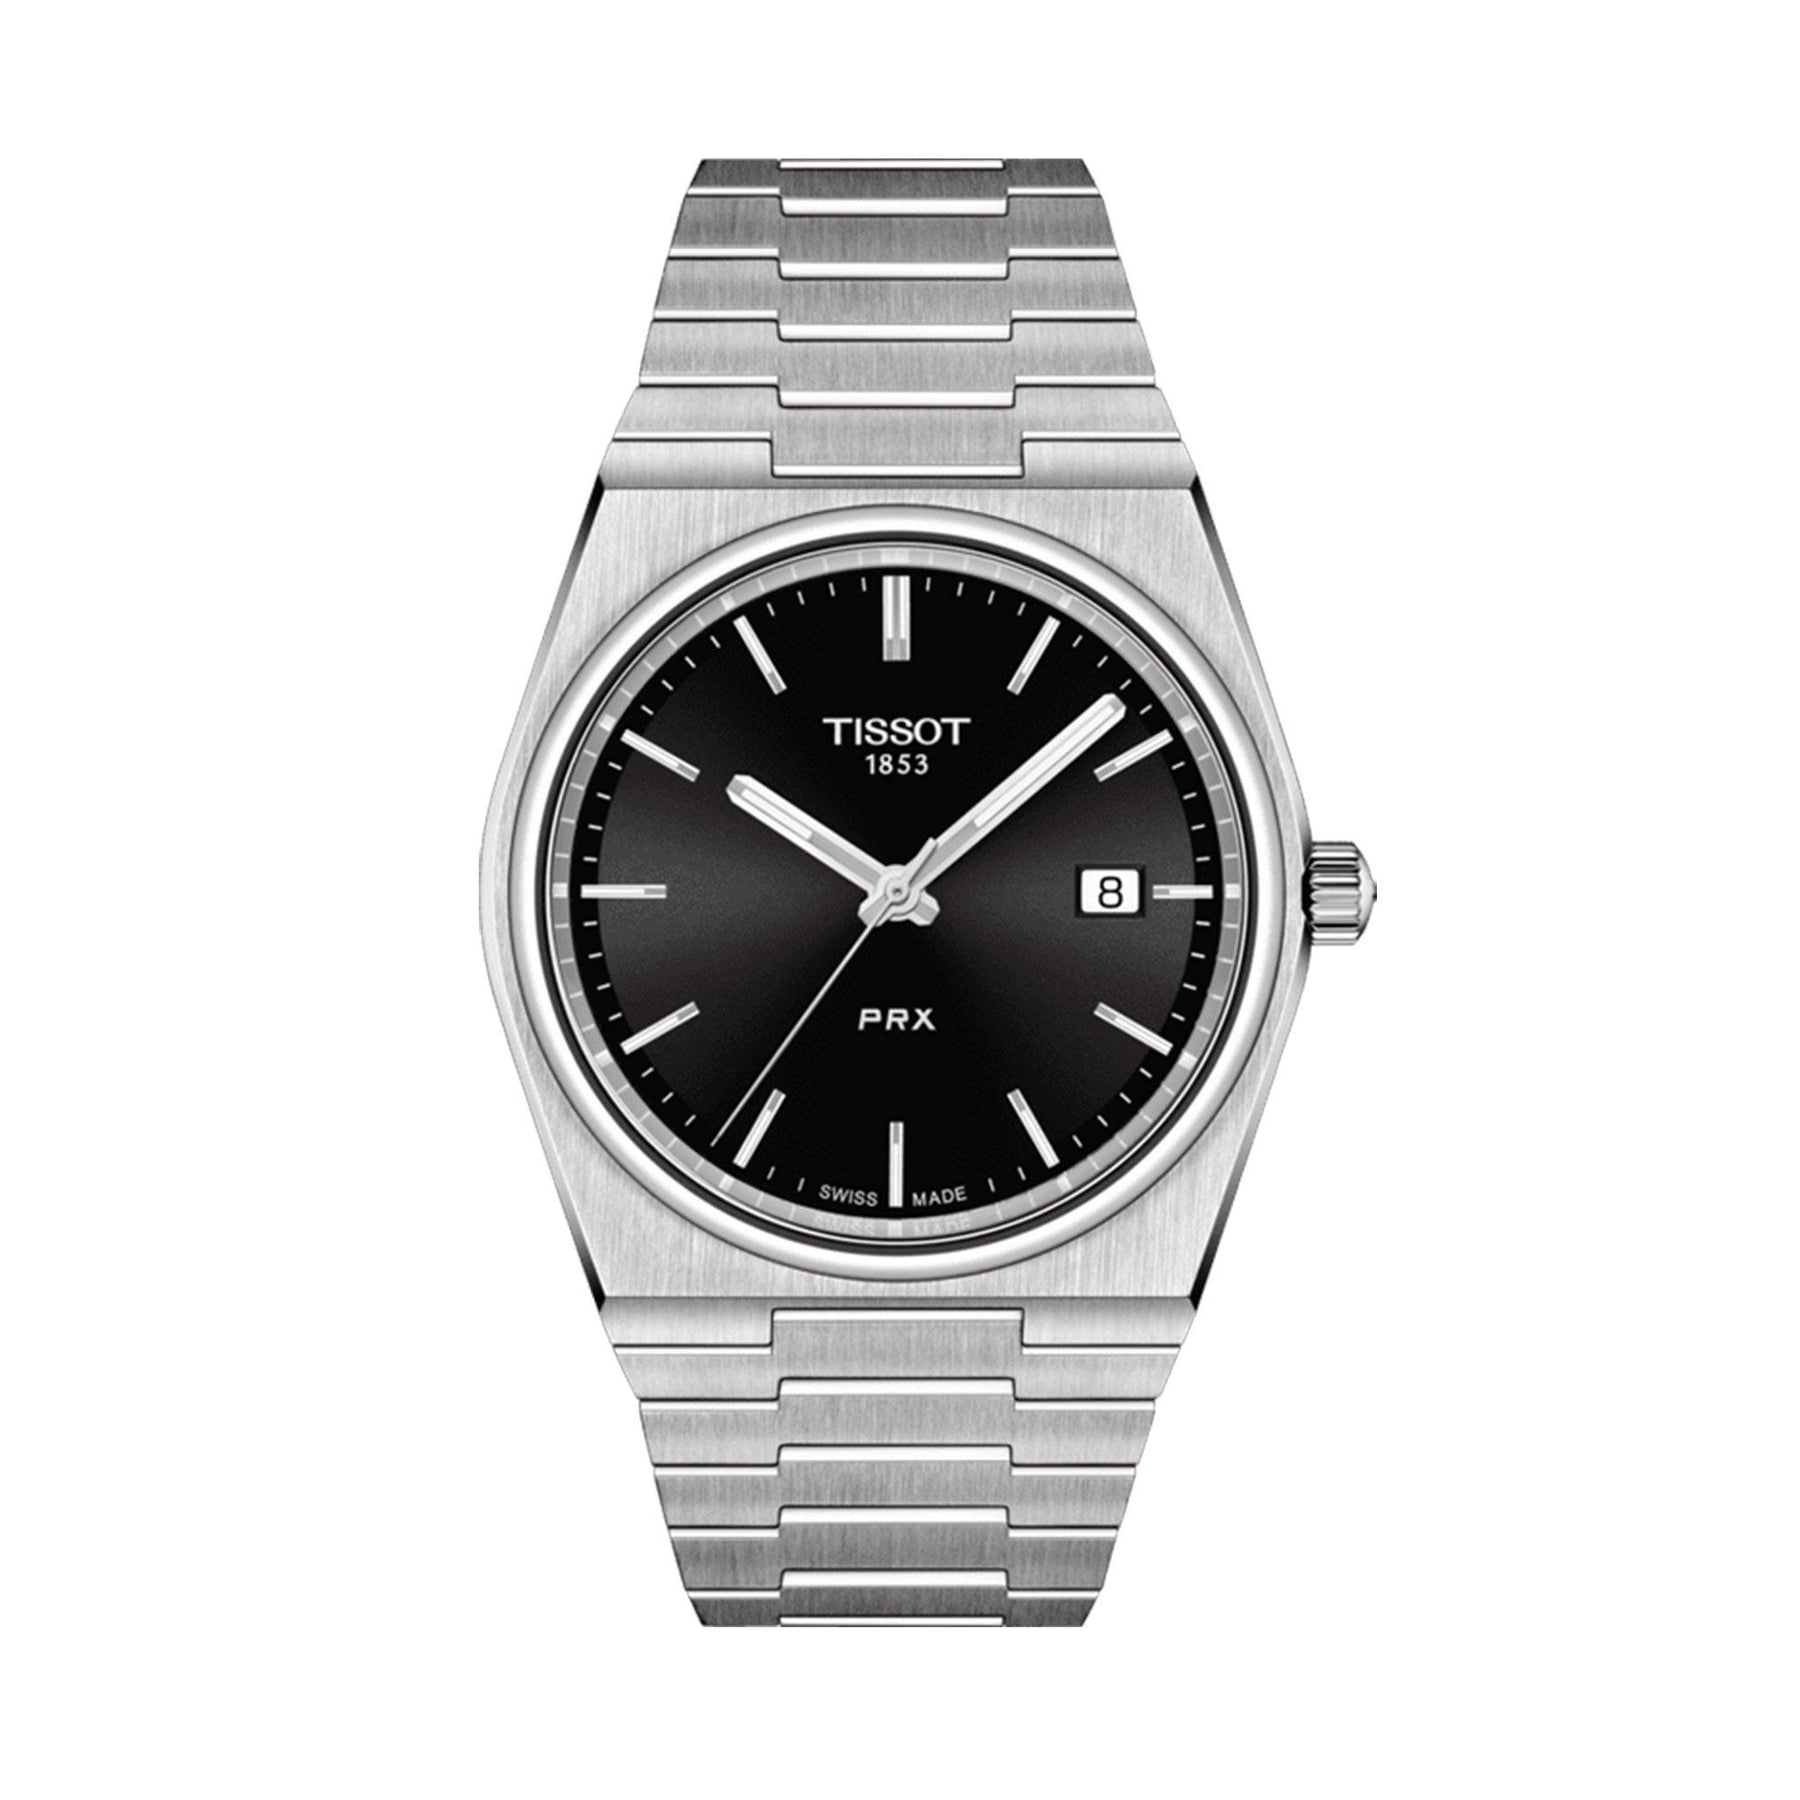 Tissot PRX Men's 40mm Stainless Steel Quartz Watch T137.410.11.051.00 - Wallace Bishop